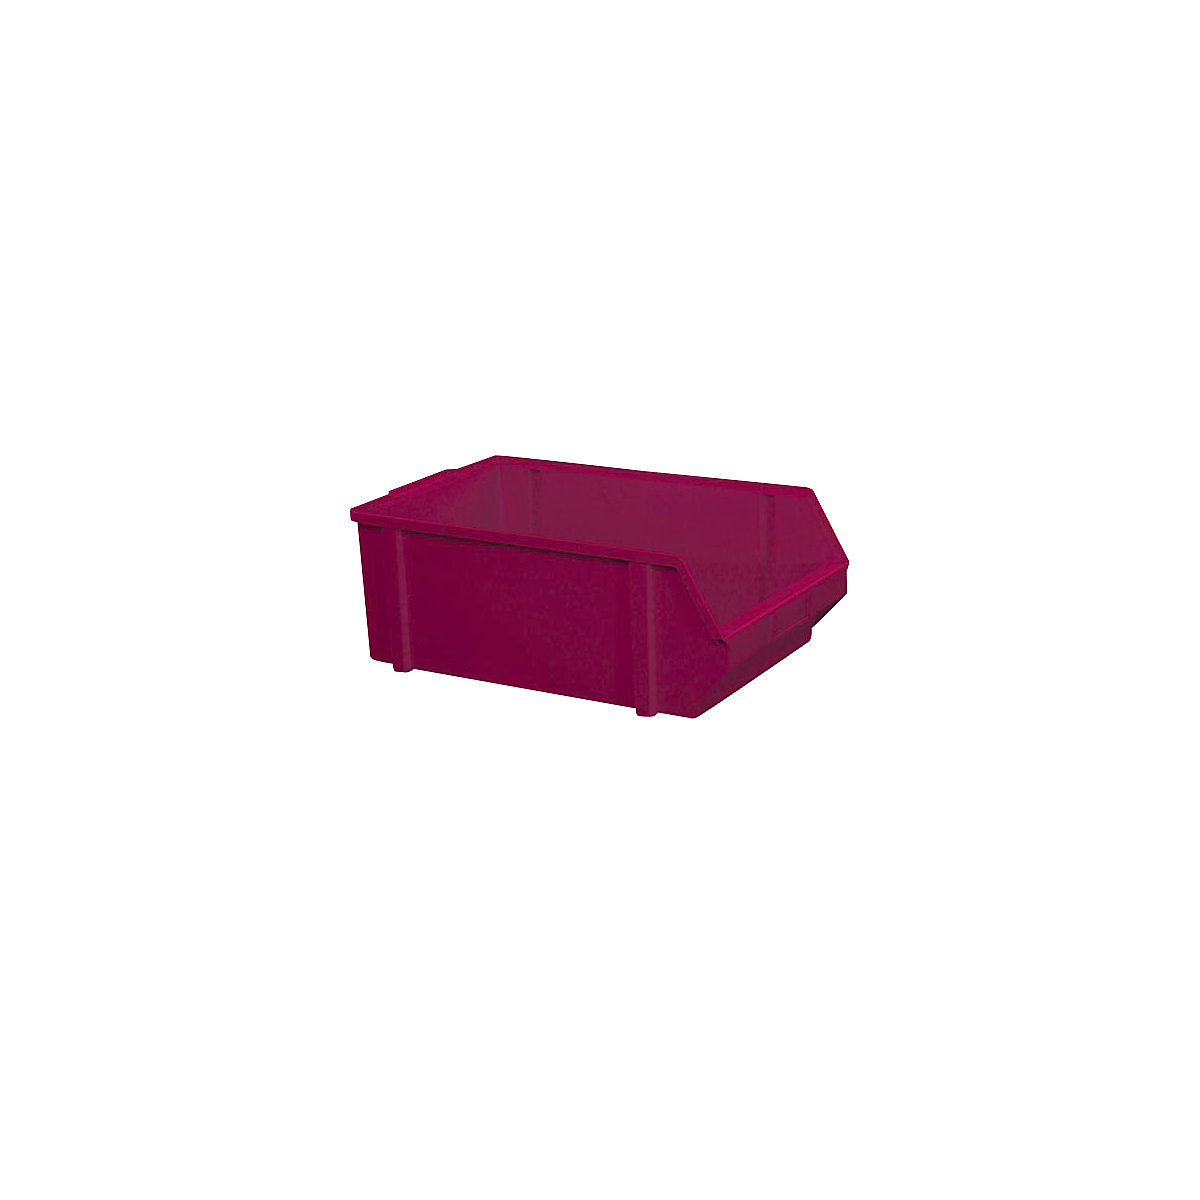 Sichtlagerkasten aus Polystyrol, Länge 500 mm, BxH 303 x 180 mm, VE 5 Stk, rot-9